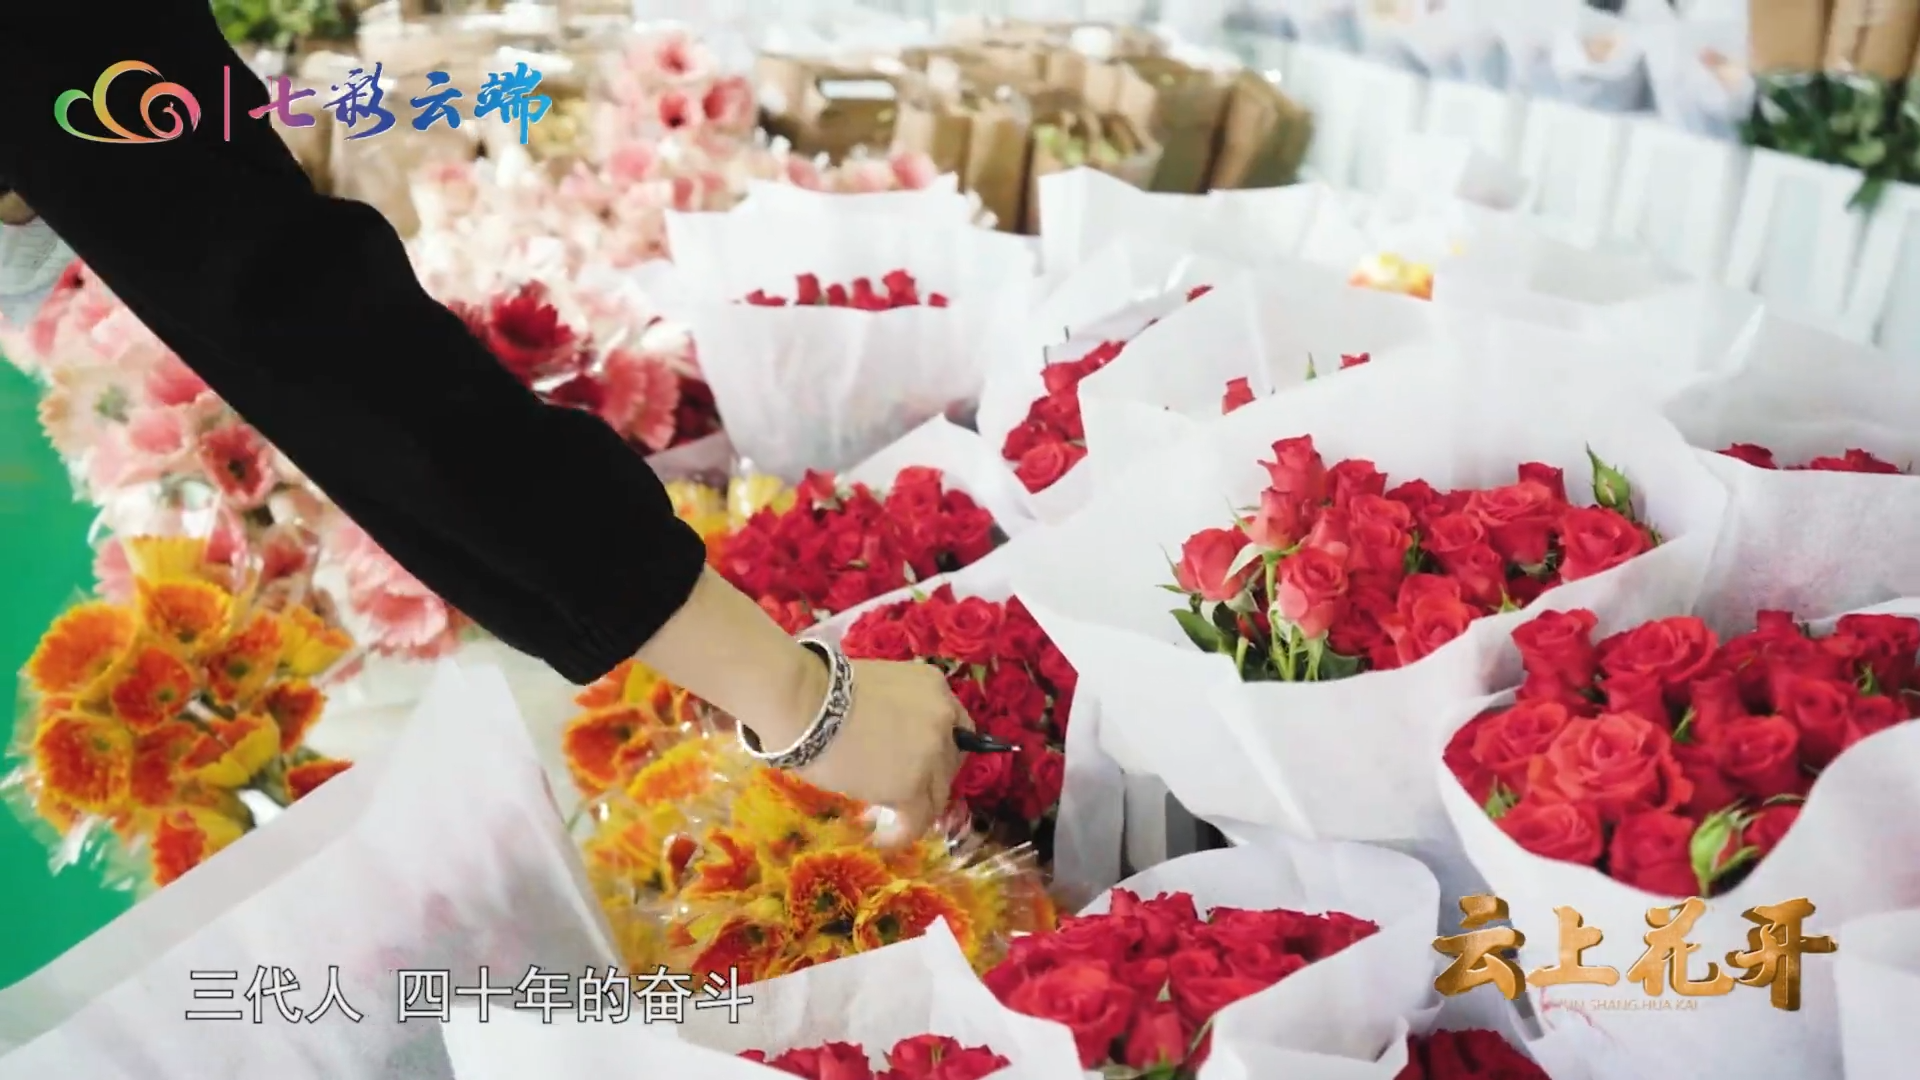 纪录片《云上花开》今晚播出《绽放》，一起感受斗南花卉市场的繁华和云花人对事业的坚守